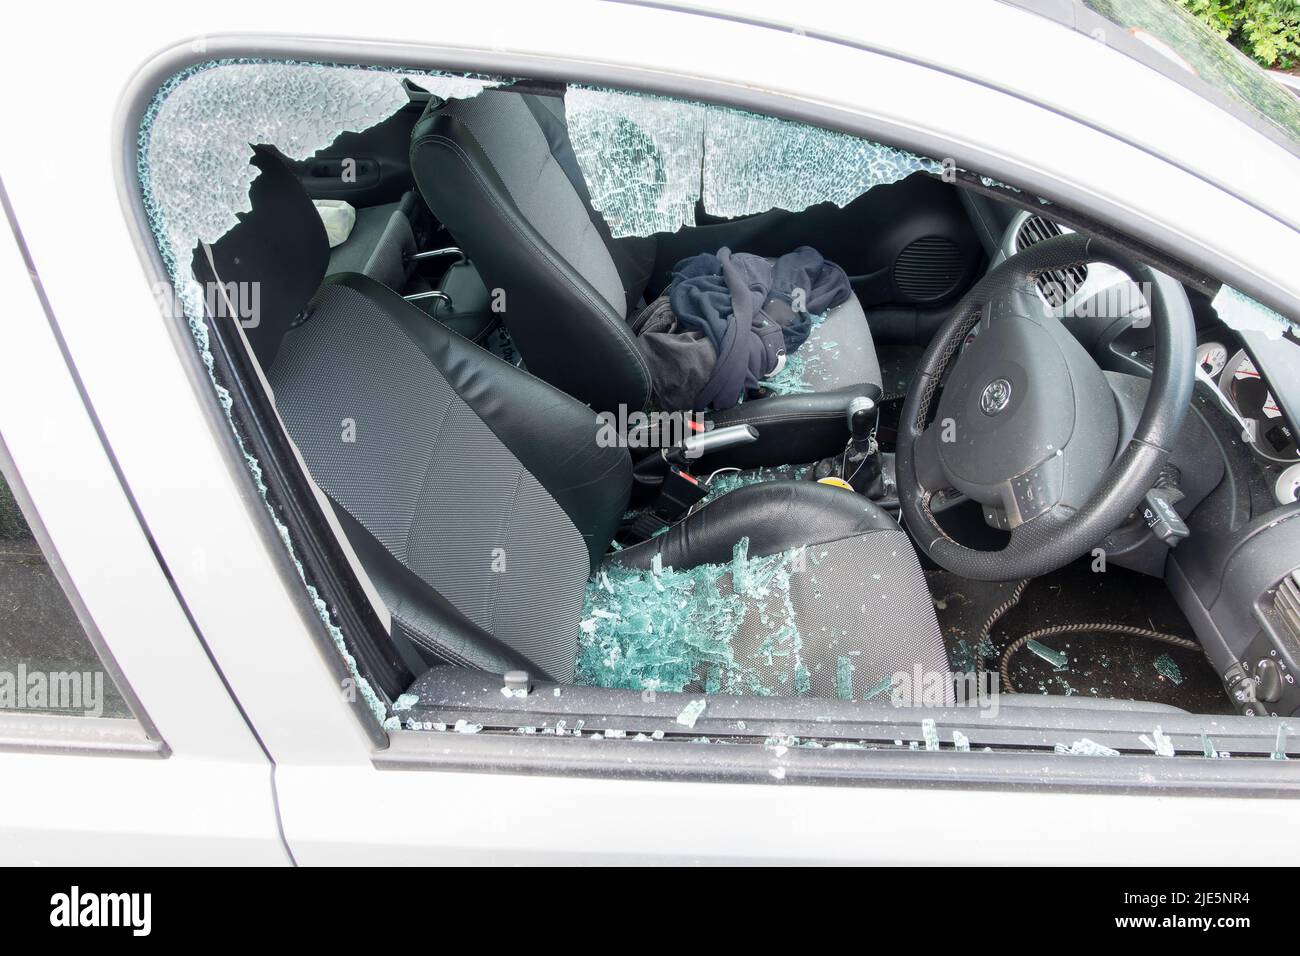 Un coche con la ventanilla lateral del conductor destrozado tras ser atacado por un ladrón. El cristal roto de la ventanilla se muestra en los asientos del interior del vehículo inseguro Foto de stock